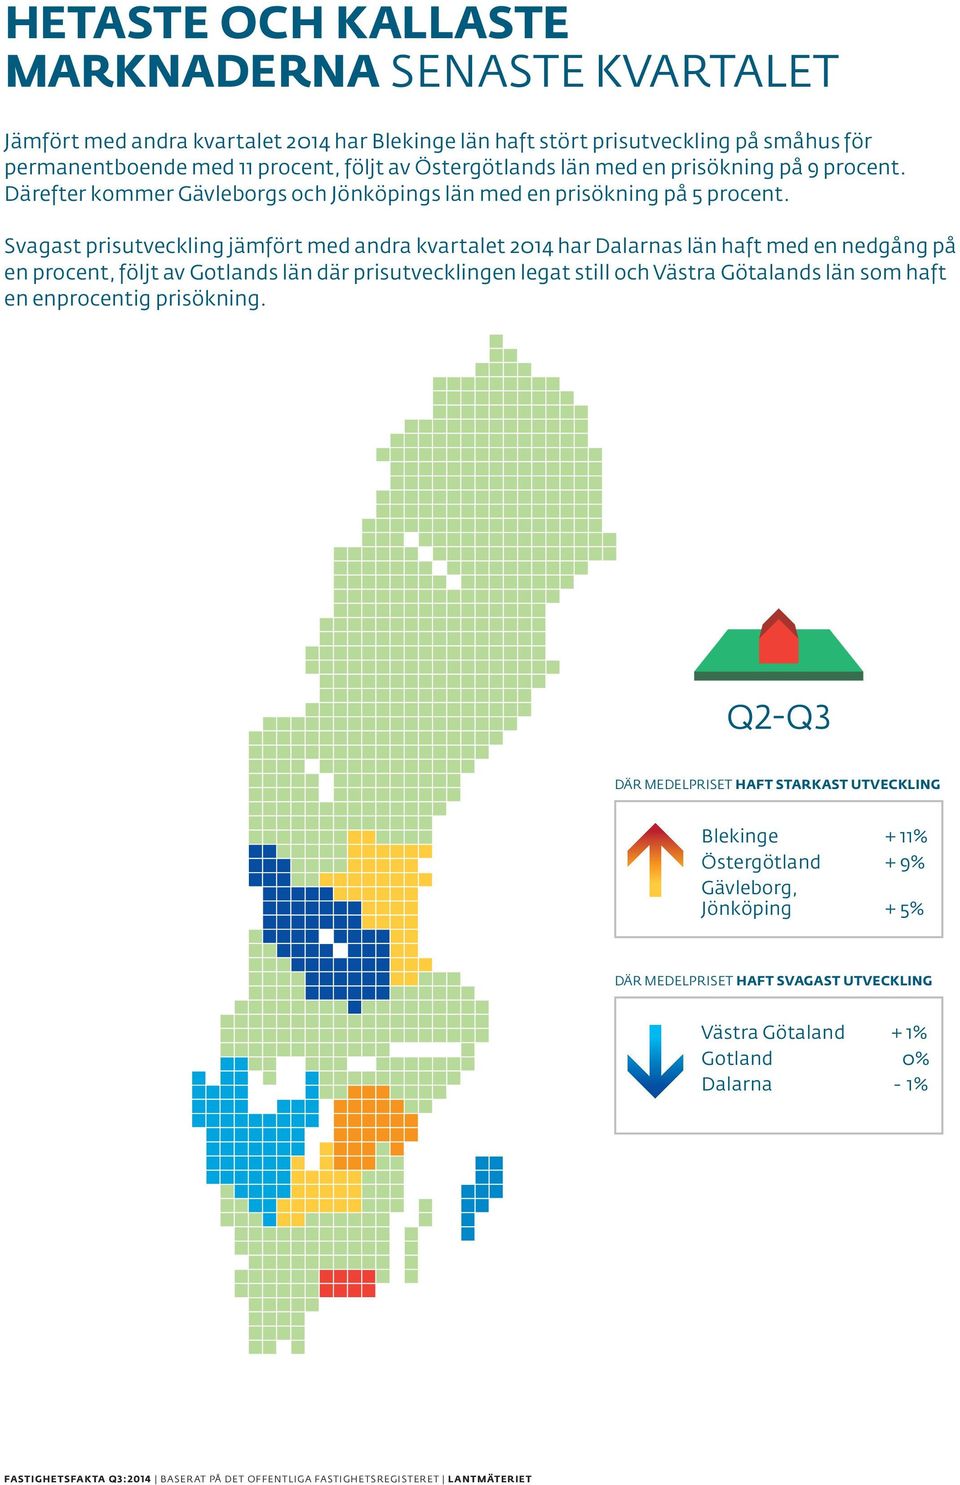 Svagast prisutveckling jämfört med andra kvartalet 2014 har Dalarnas län haft med en nedgång på en procent, följt av Gotlands län där prisutvecklingen legat still och Västra